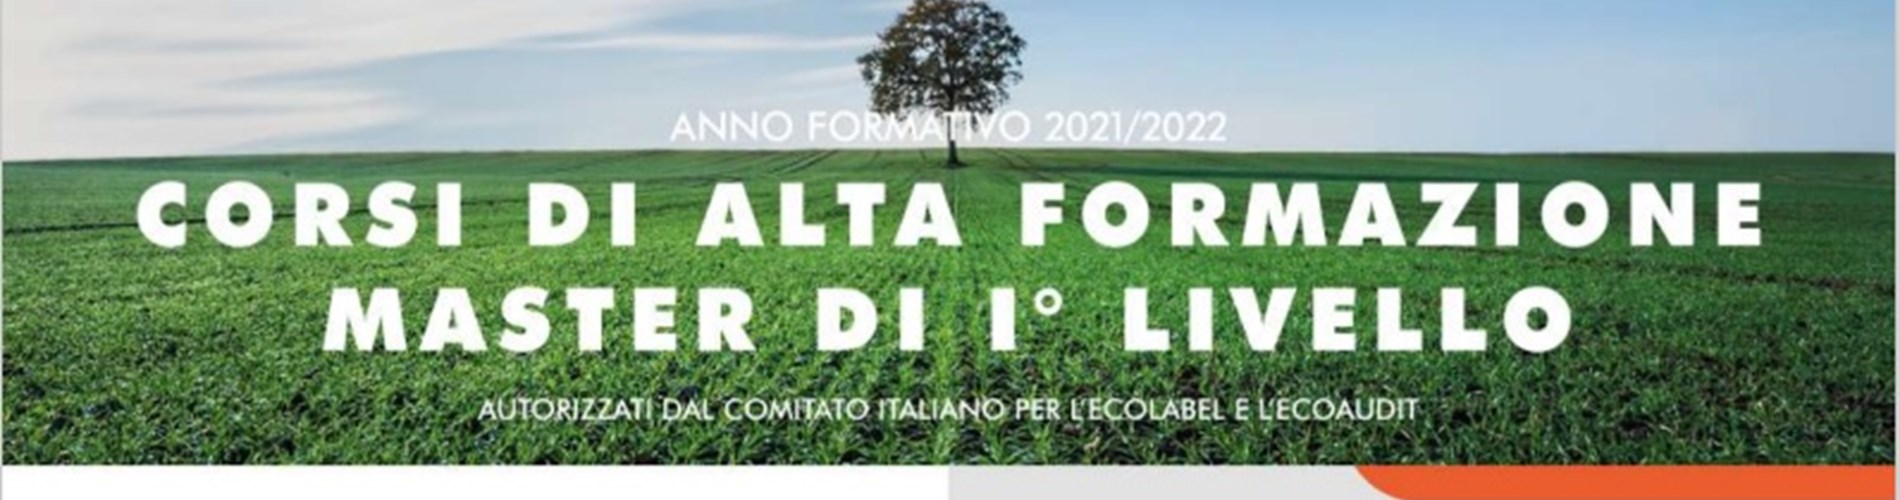 Corsi di alta formazione Master 1° livello autorizzati dal comitato italiano per l'Ecolabel e l'Ecoaudit